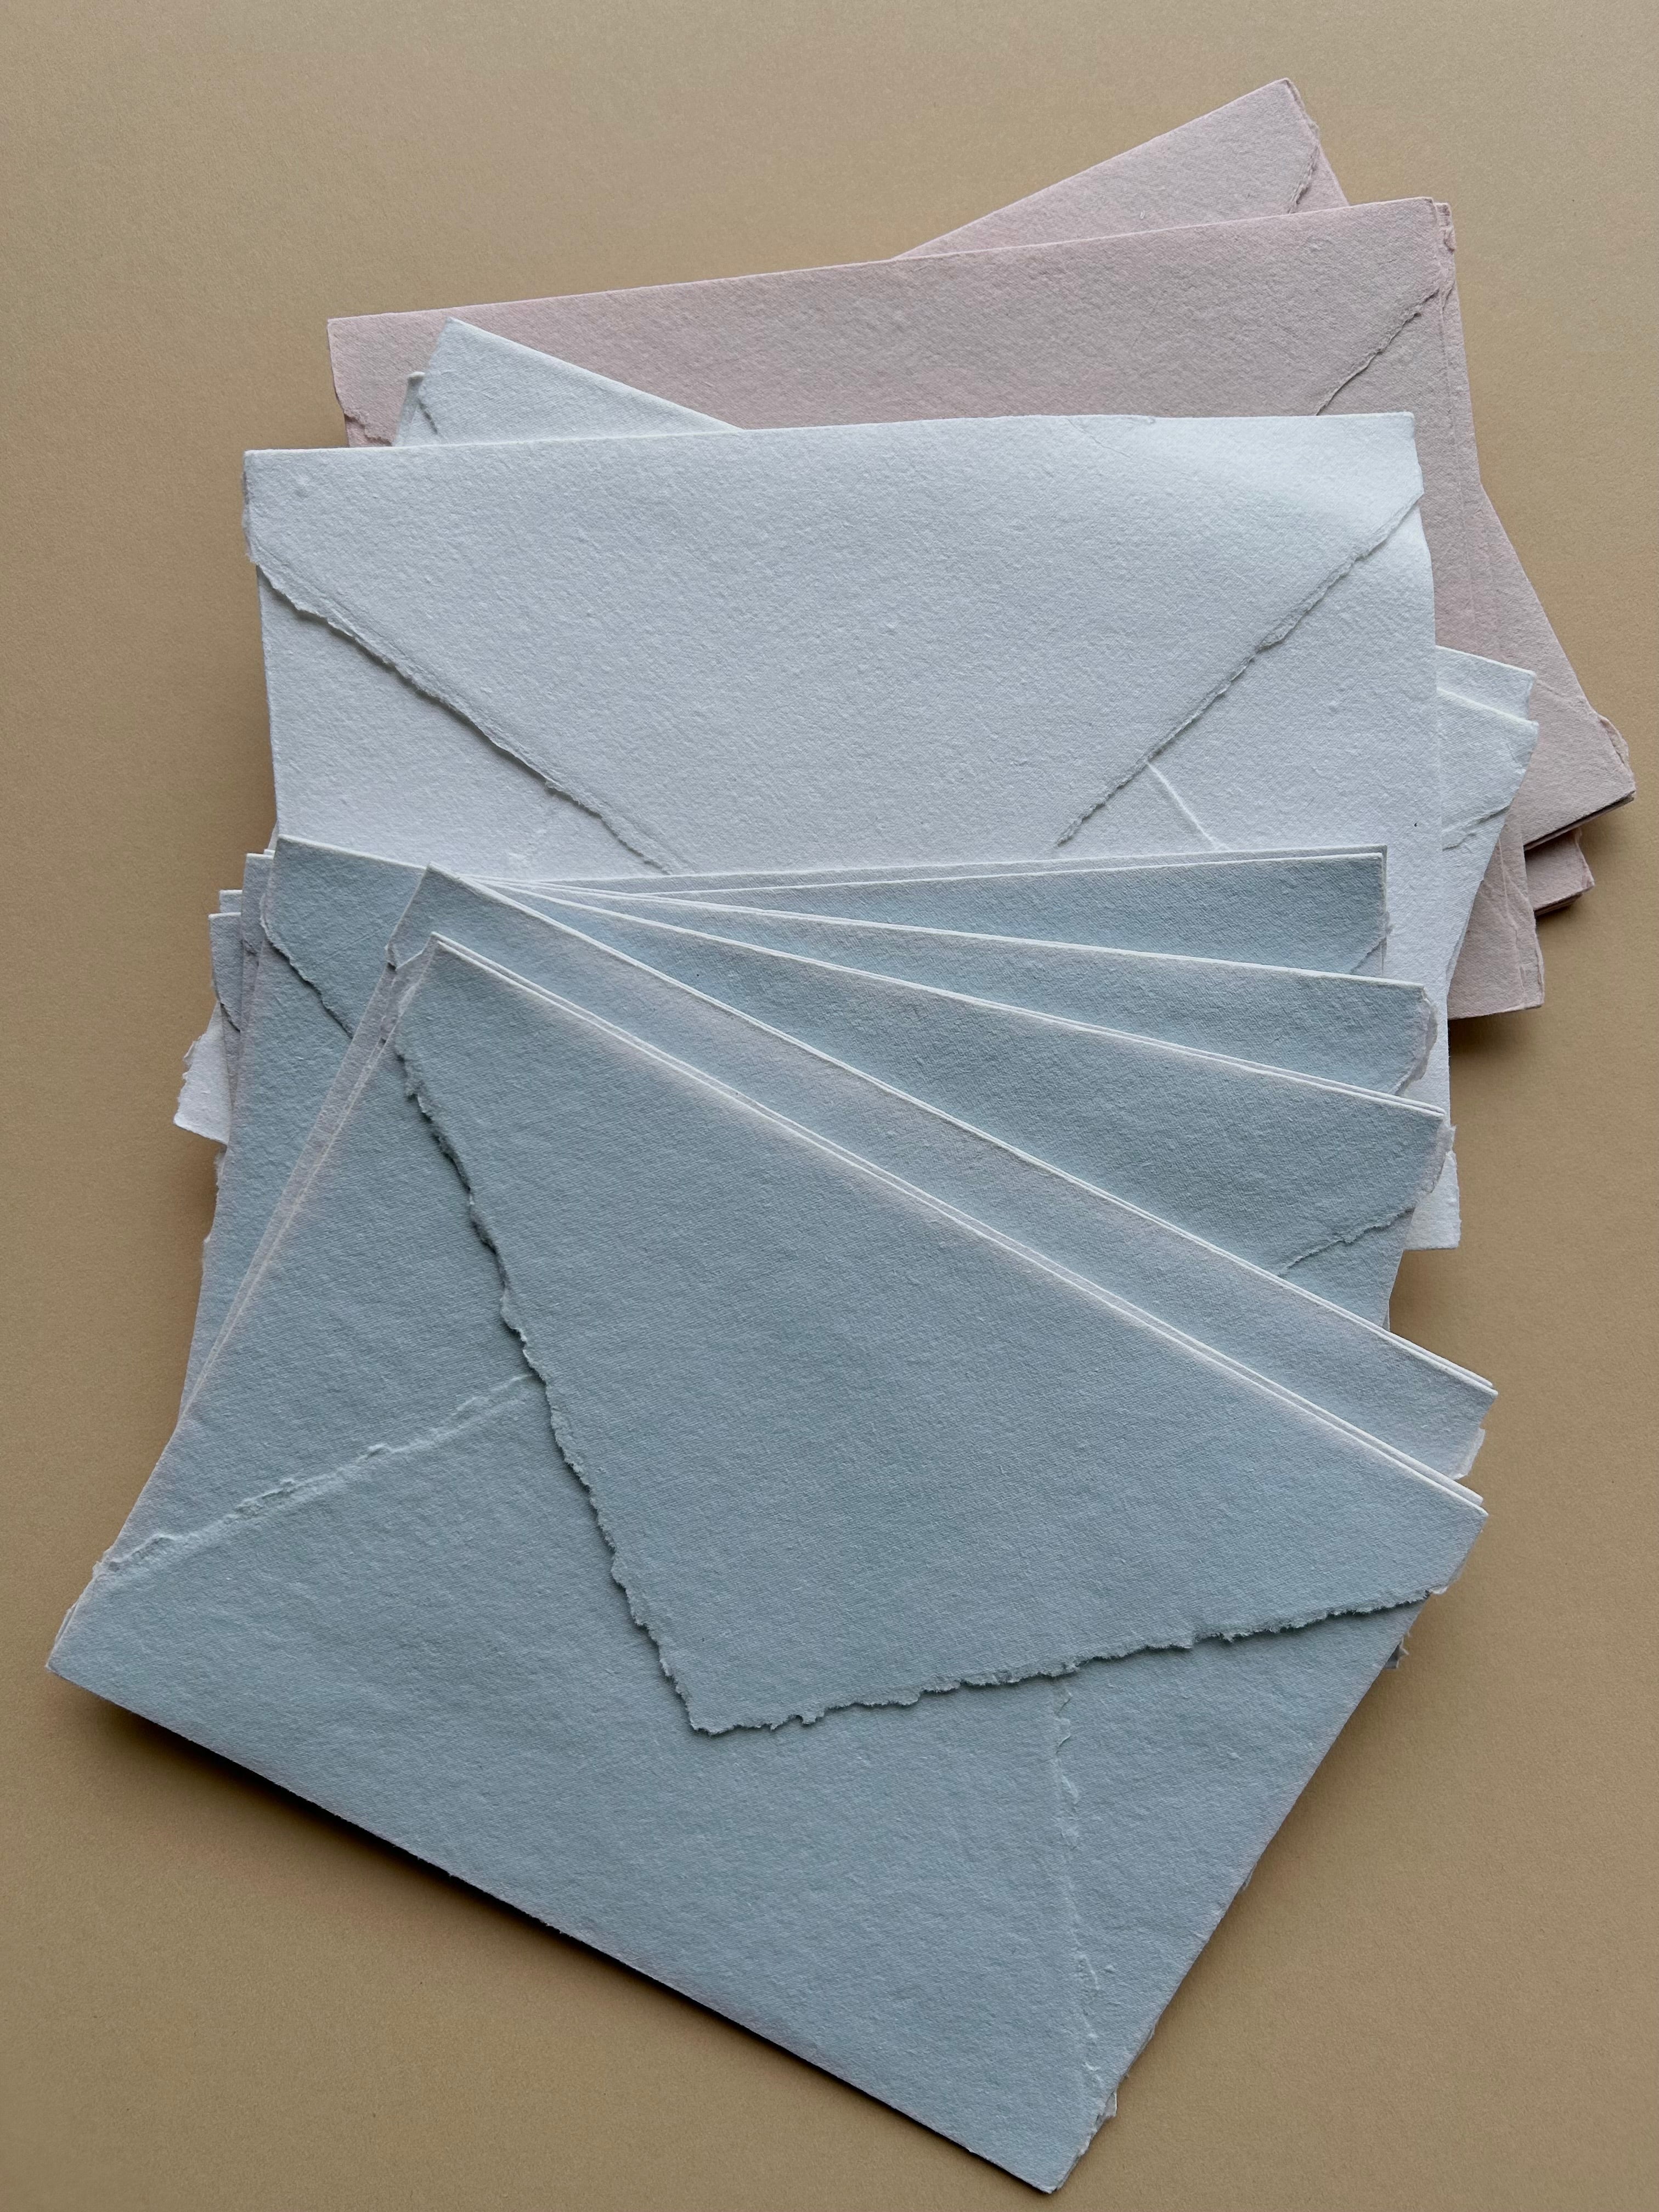 SECONDS 5x7 Cotton rag envelopes